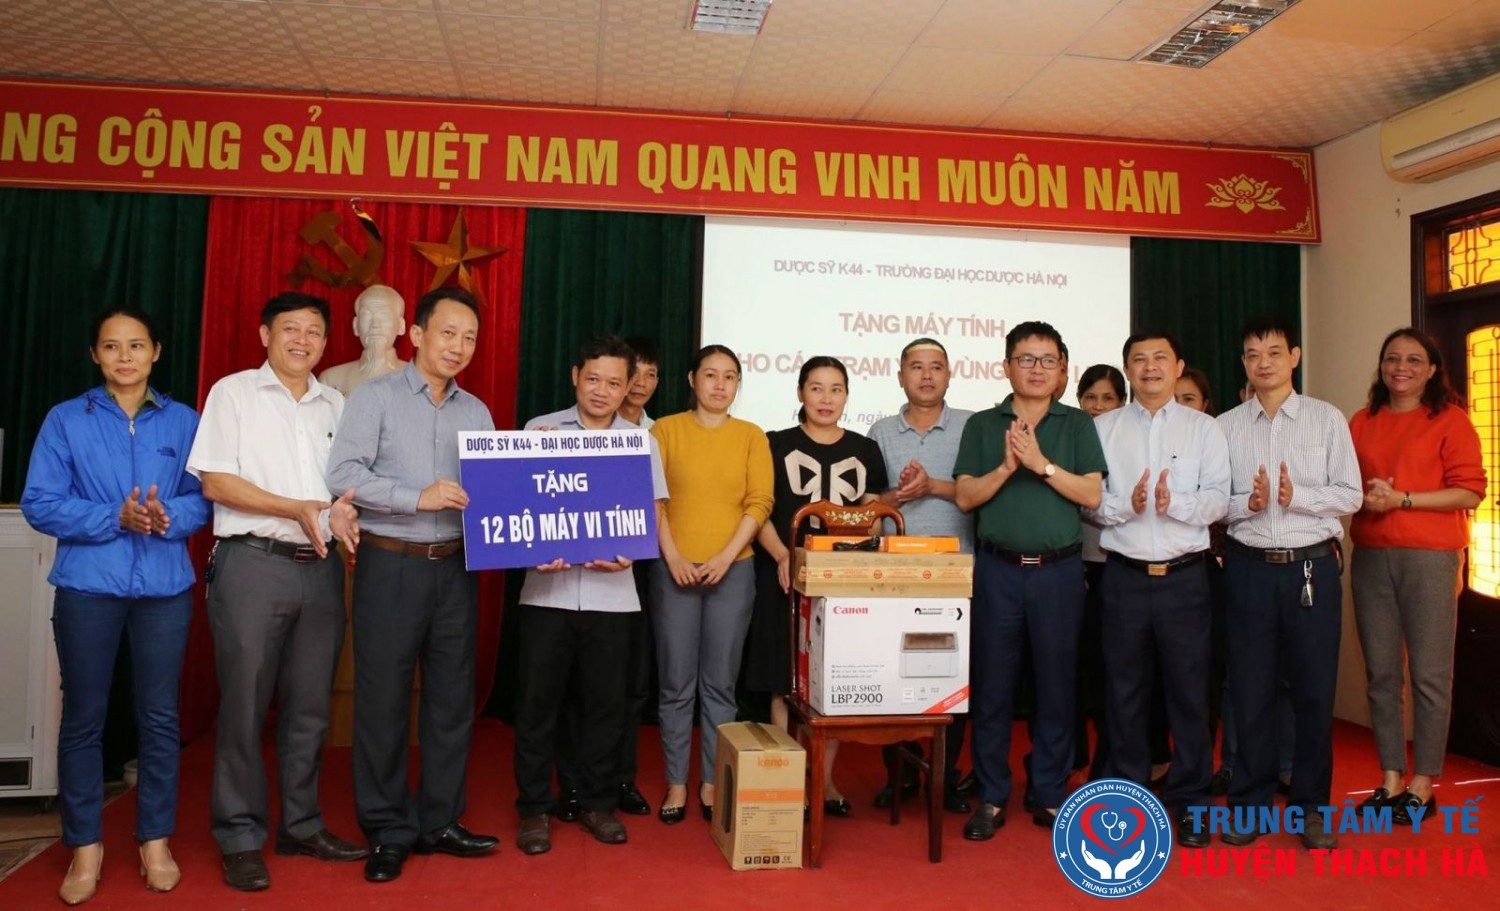 Đoàn đã trao tặng 12 bộ máy vi tính cho 12 trạm y tế bị thiệt hại do lũ lụt